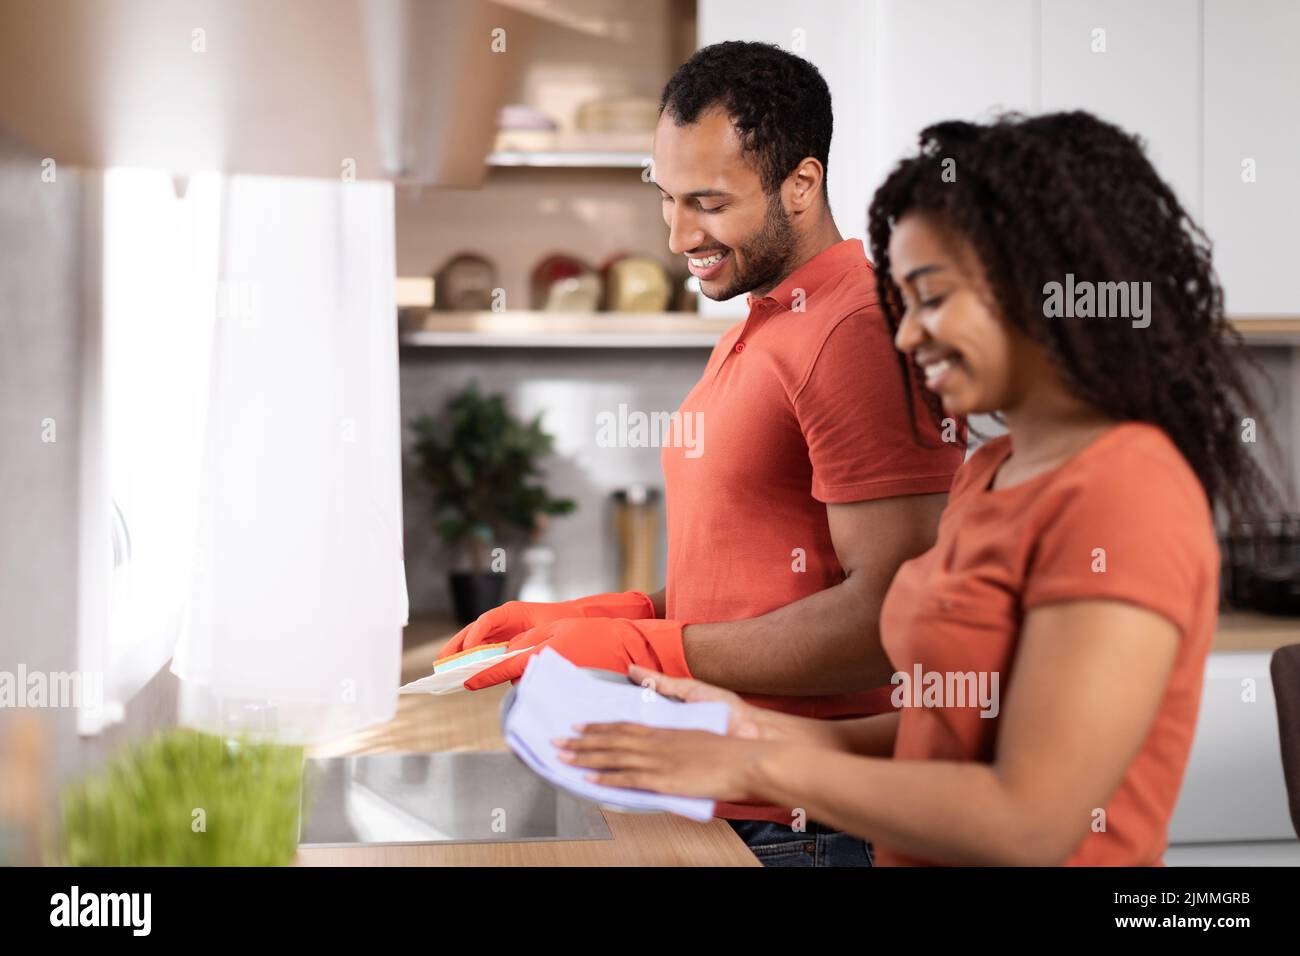 Frohes, tausendjähriges afroamerikanisches Männchen und eine Dame in den gleichen T-Shirts, die Geschirr waschen, genießen Sie die Zeit zusammen Stockfoto